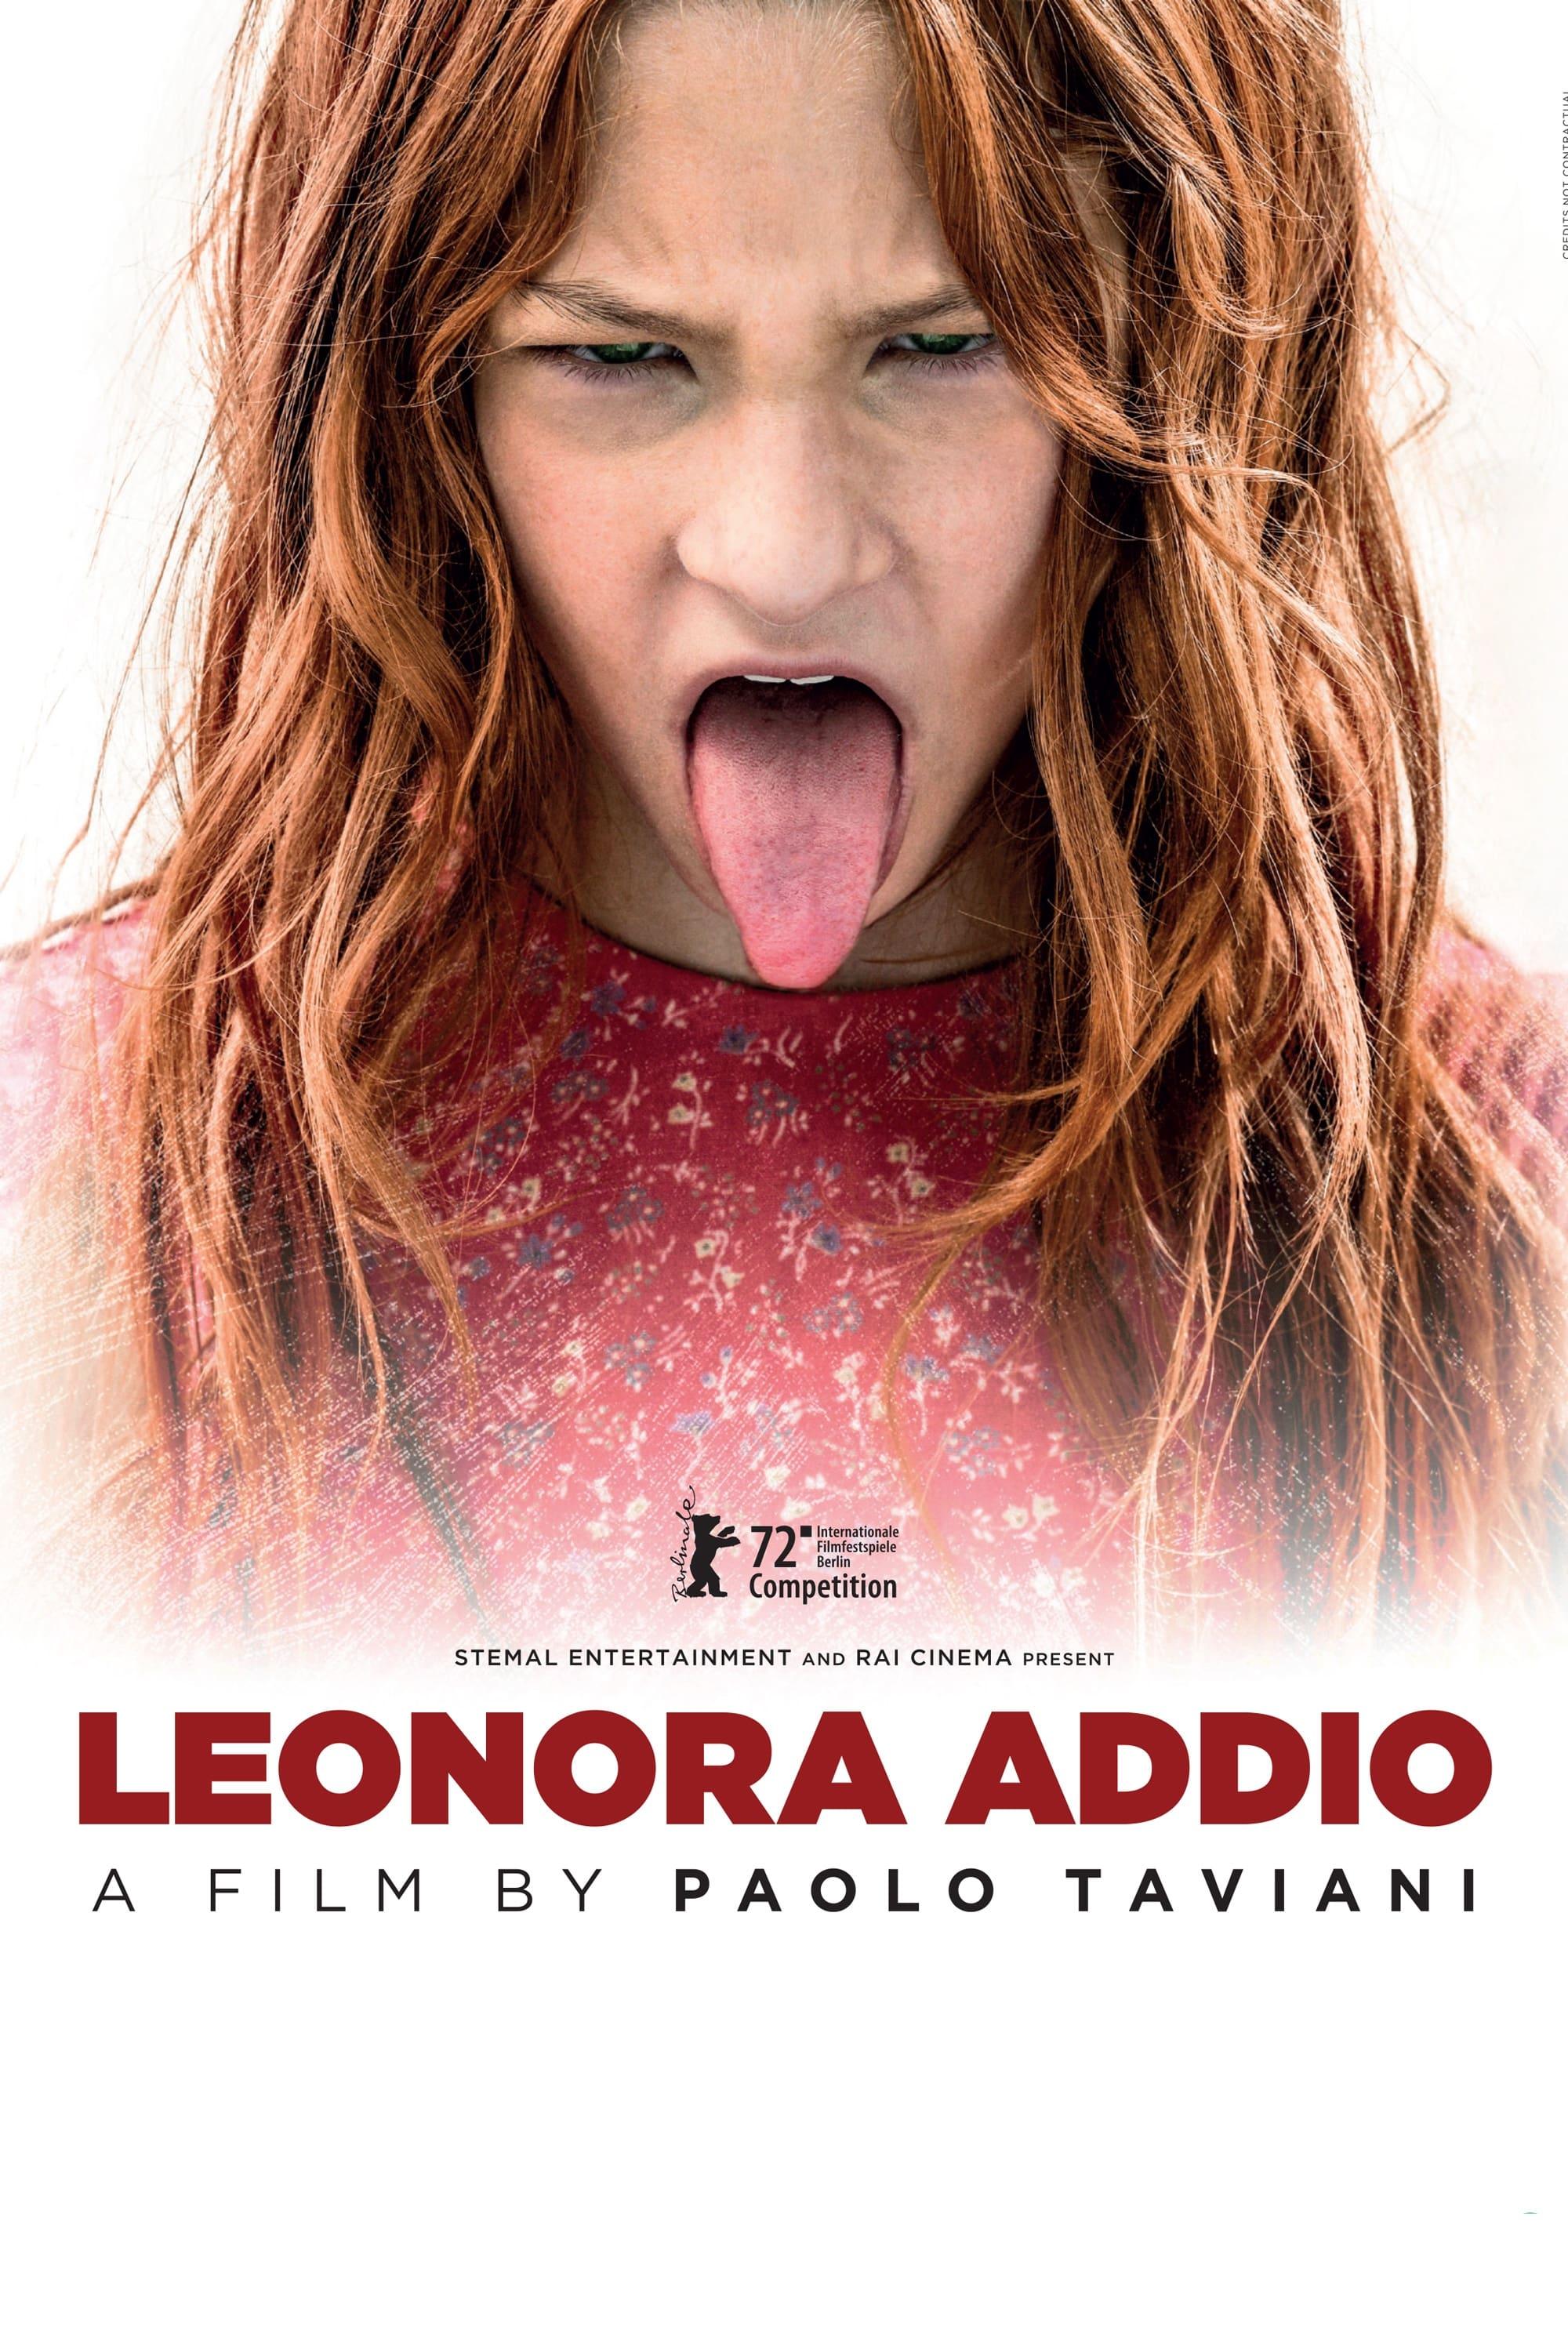 Leonora addio poster